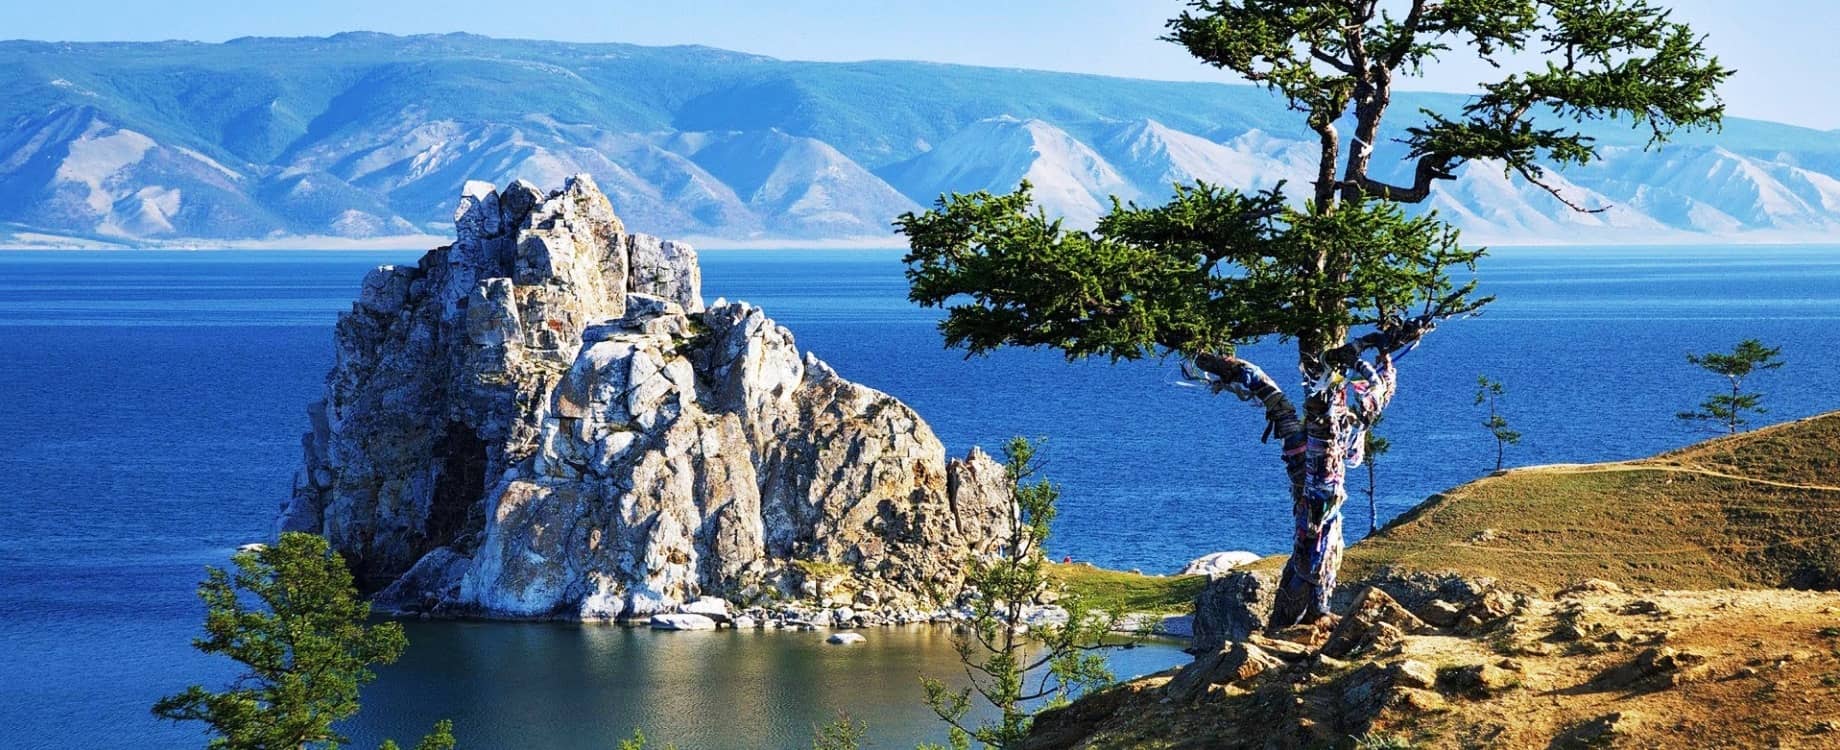 Большой выбор туров на Байкал - лето 2020